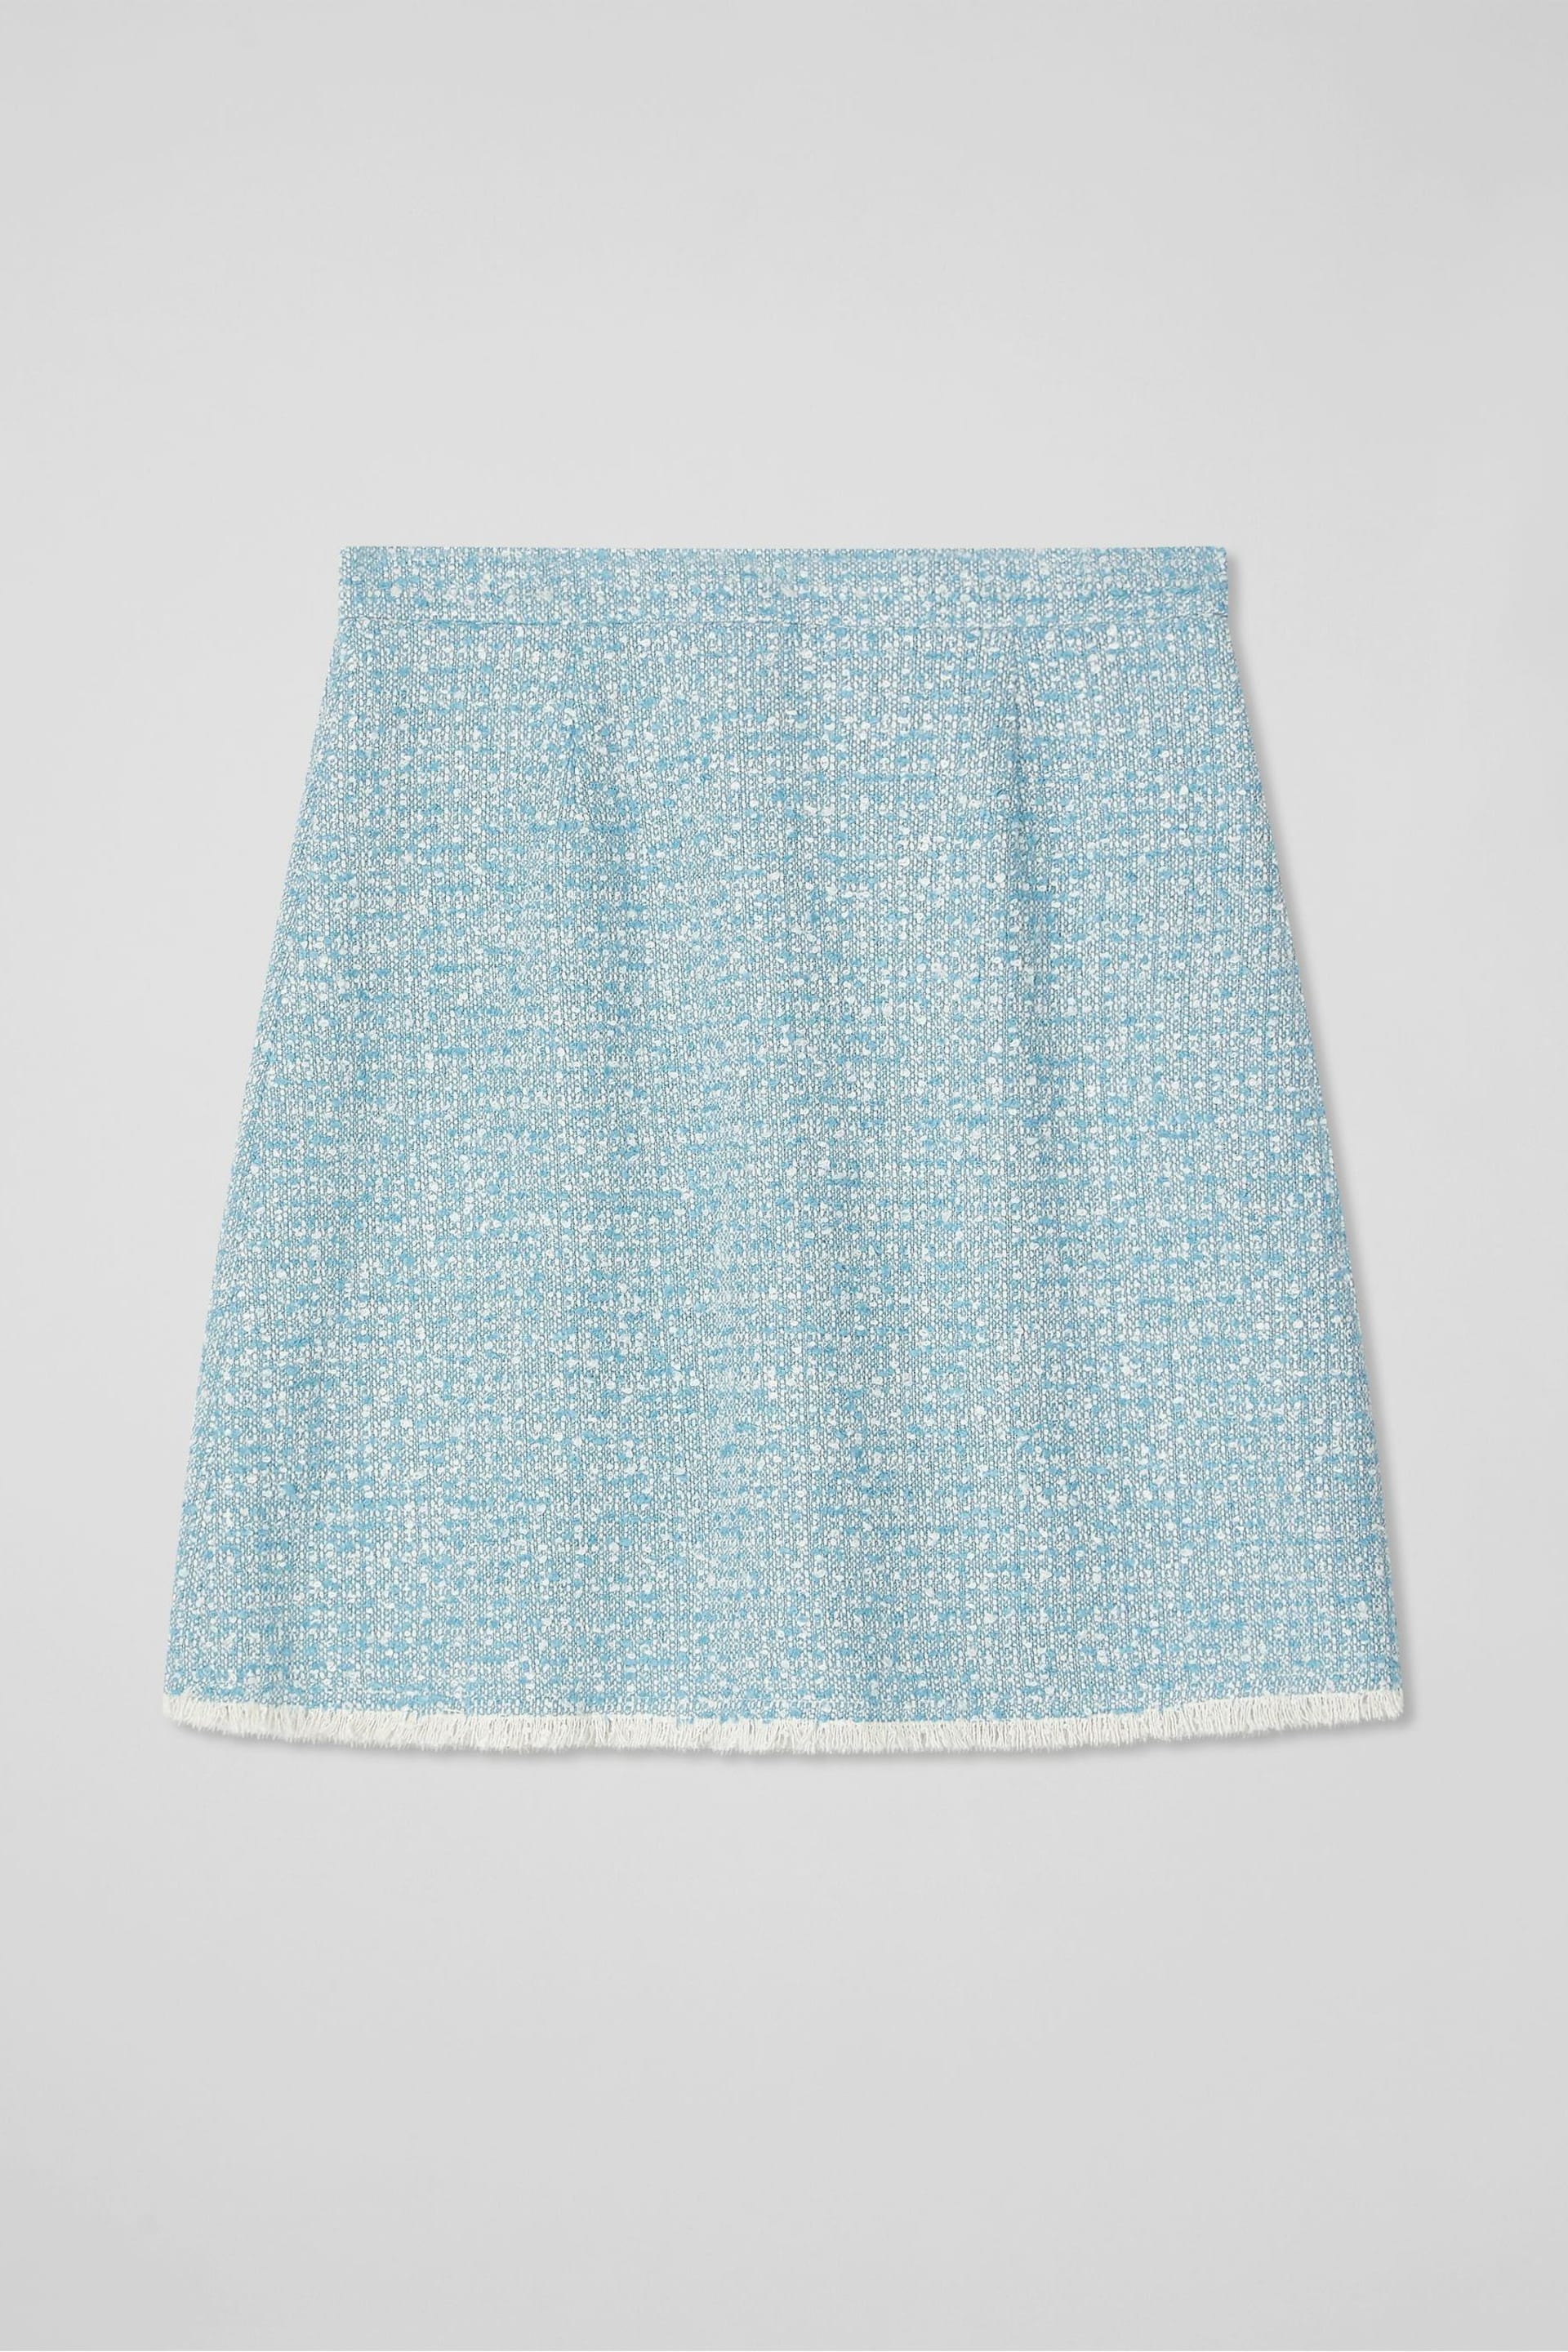 LK Bennett Karis Italian Cotton Blend Tweed Skirt - Image 4 of 4